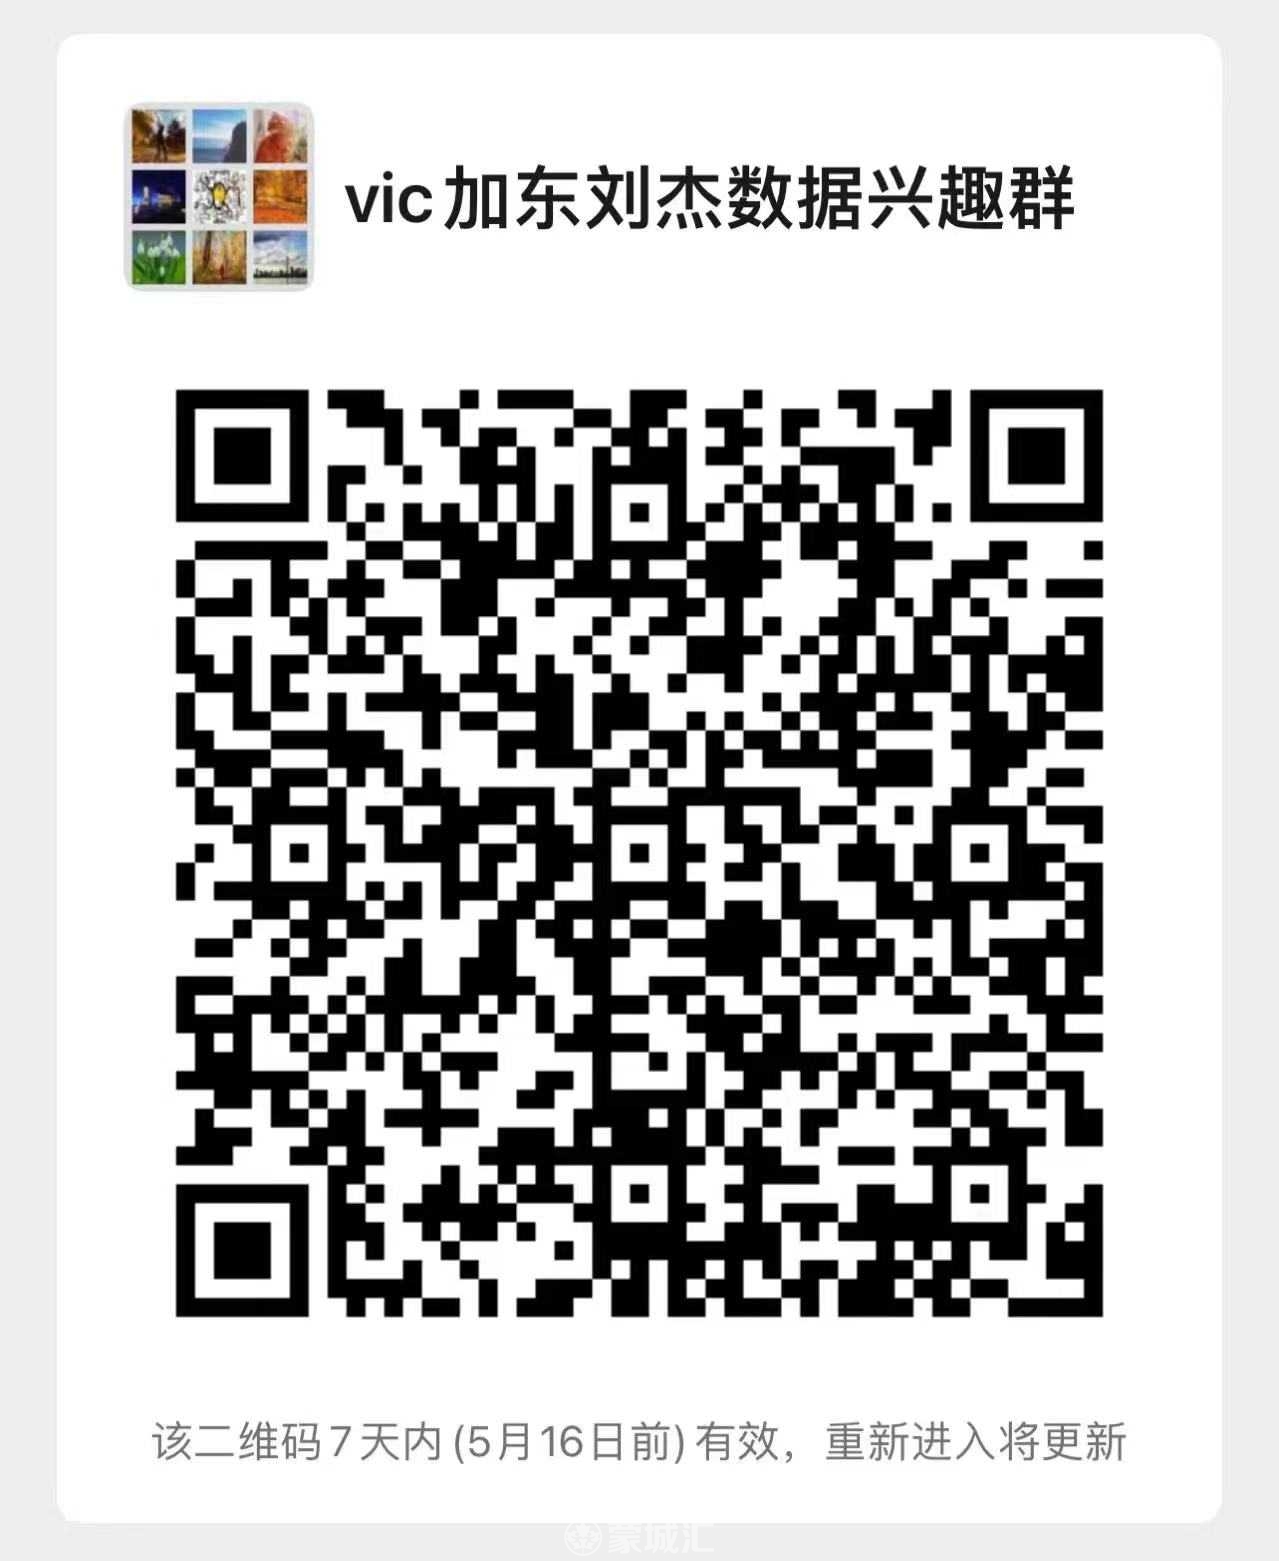 WeChat Image_20220510172436.jpg